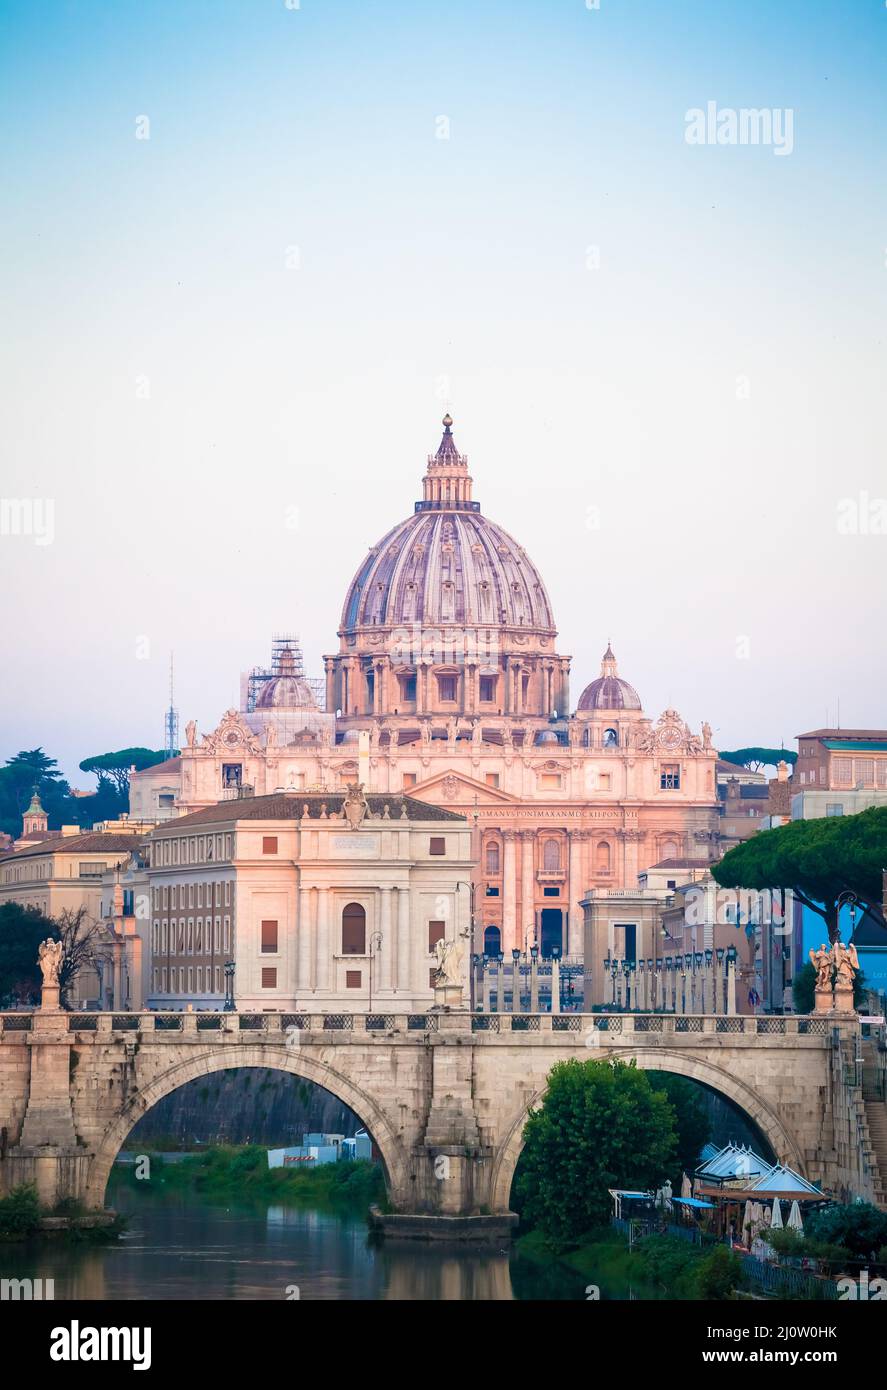 Coucher de soleil sur le pont du Tibre avec la Cité du Vatican - Rome, Italie Banque D'Images